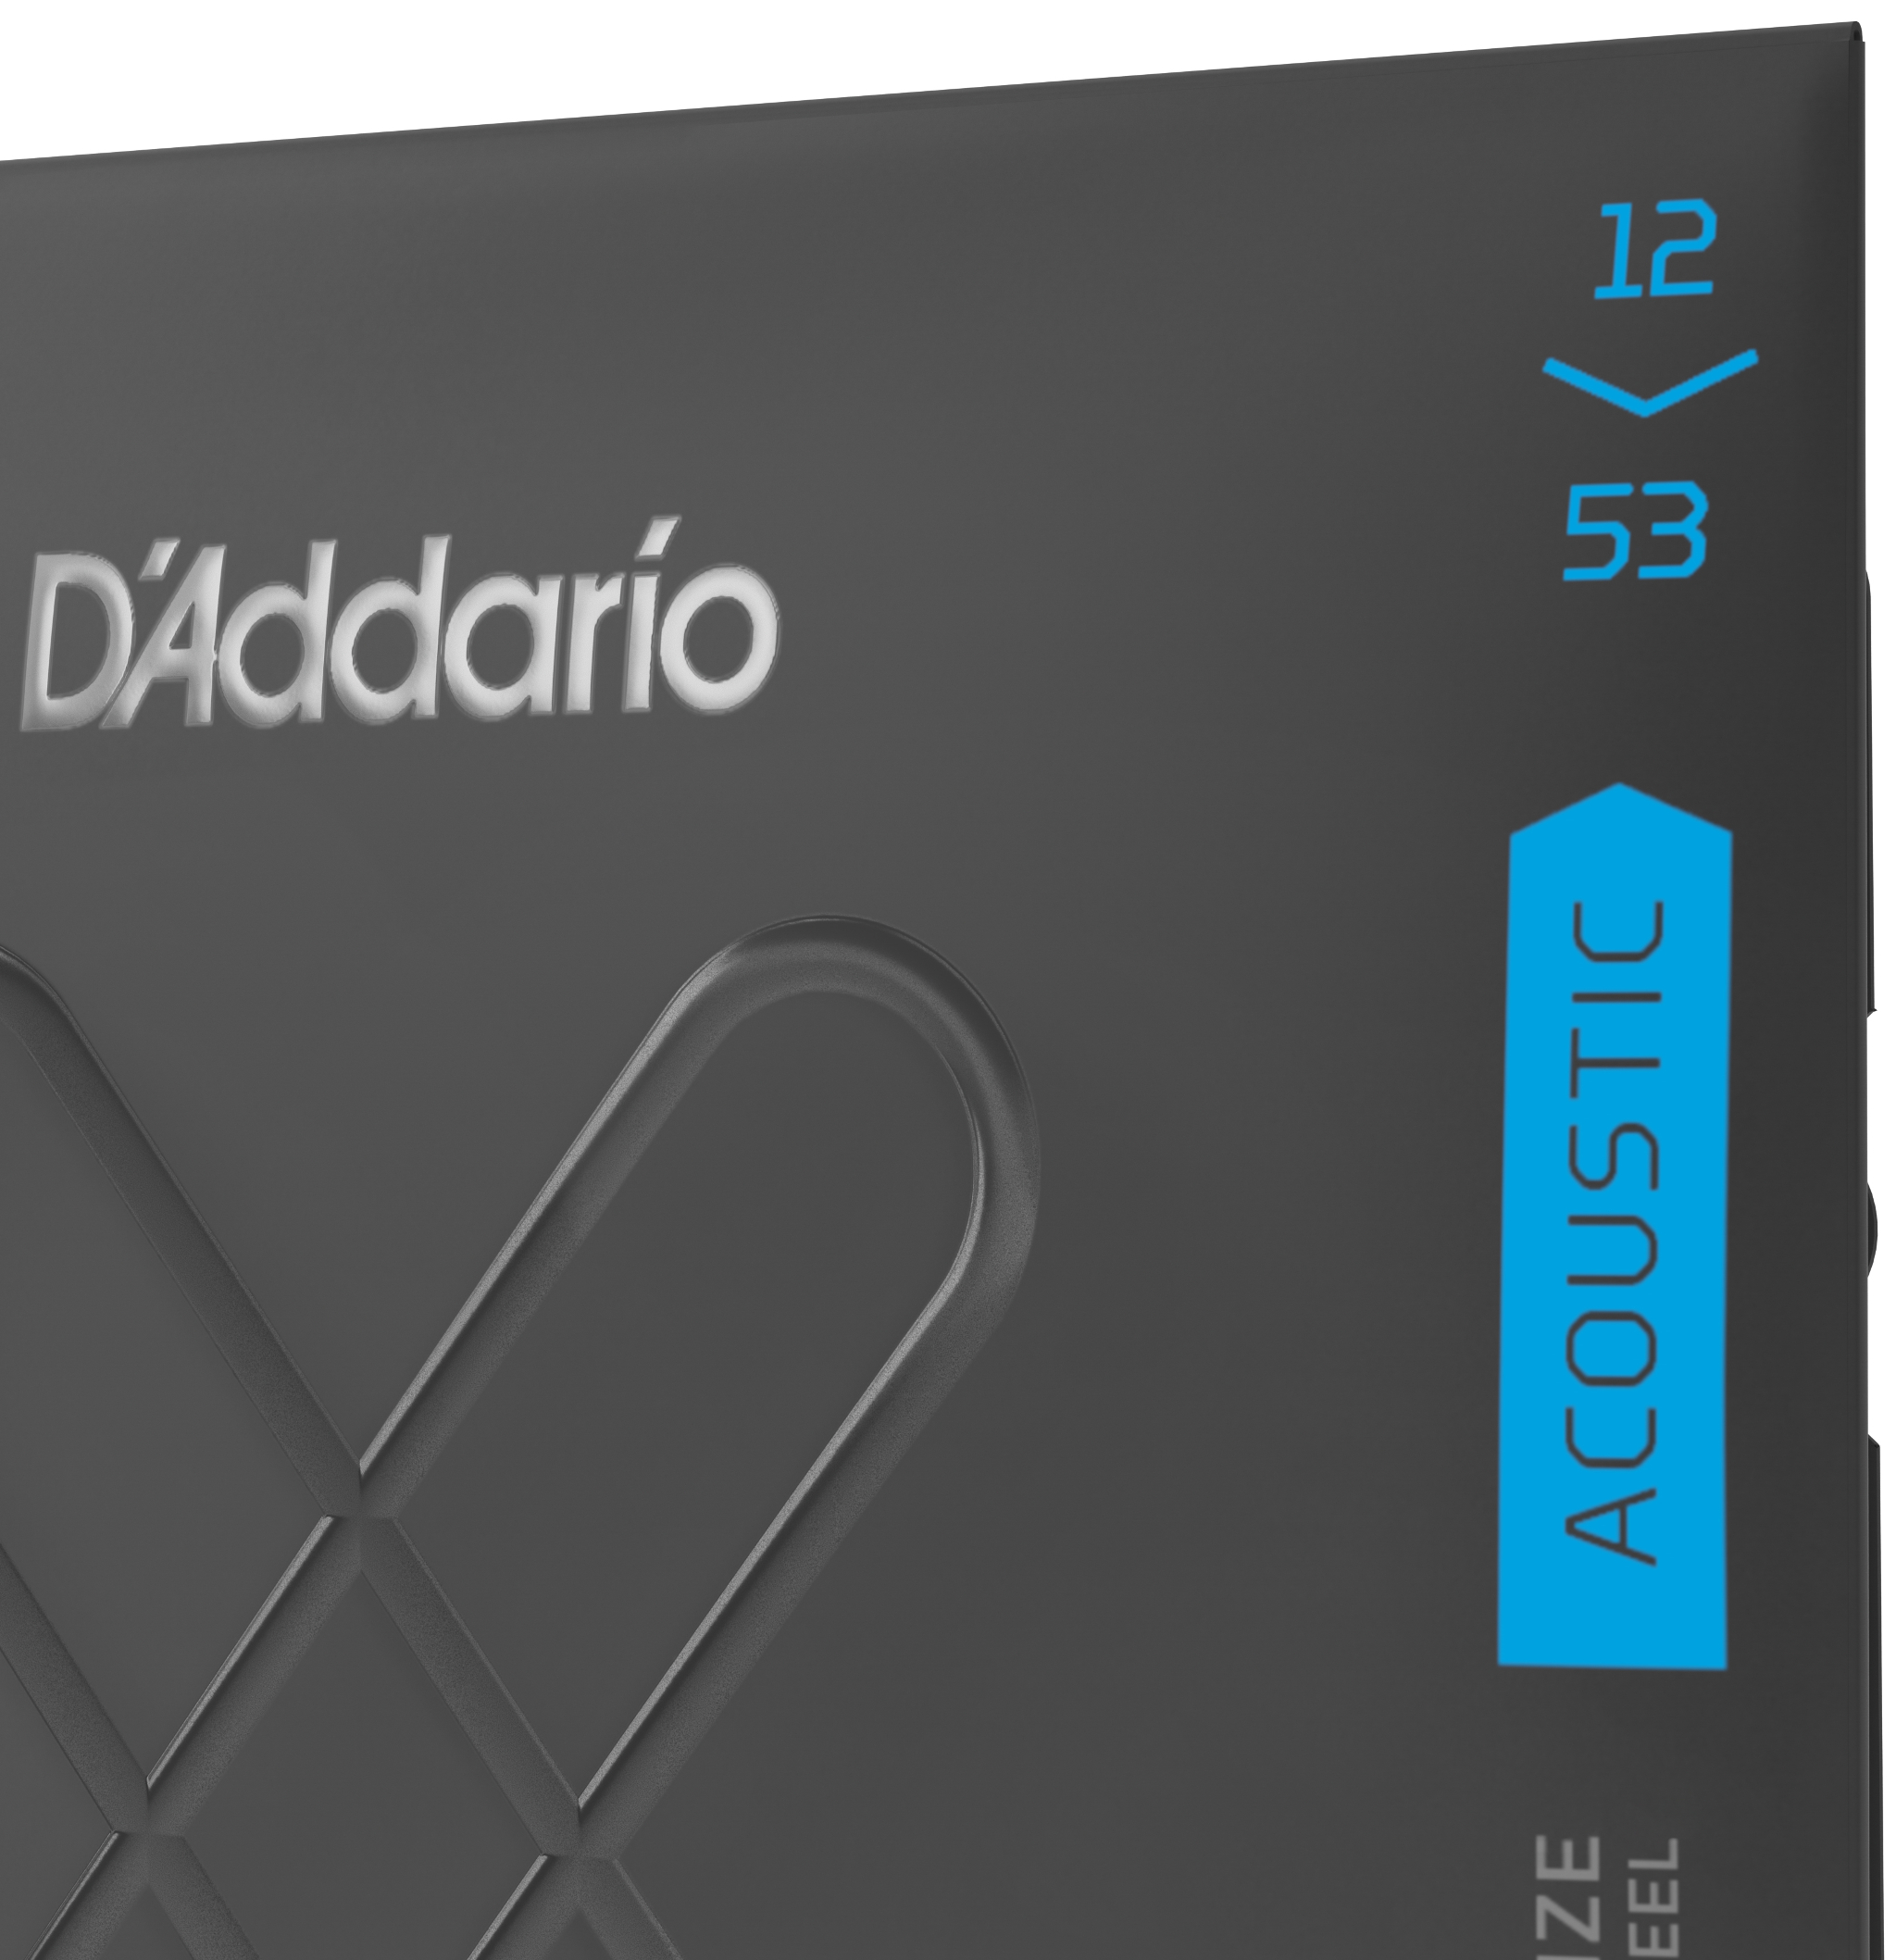 Daddario XTABR1253 Acoustic 80/20 Bronze Light 12-53